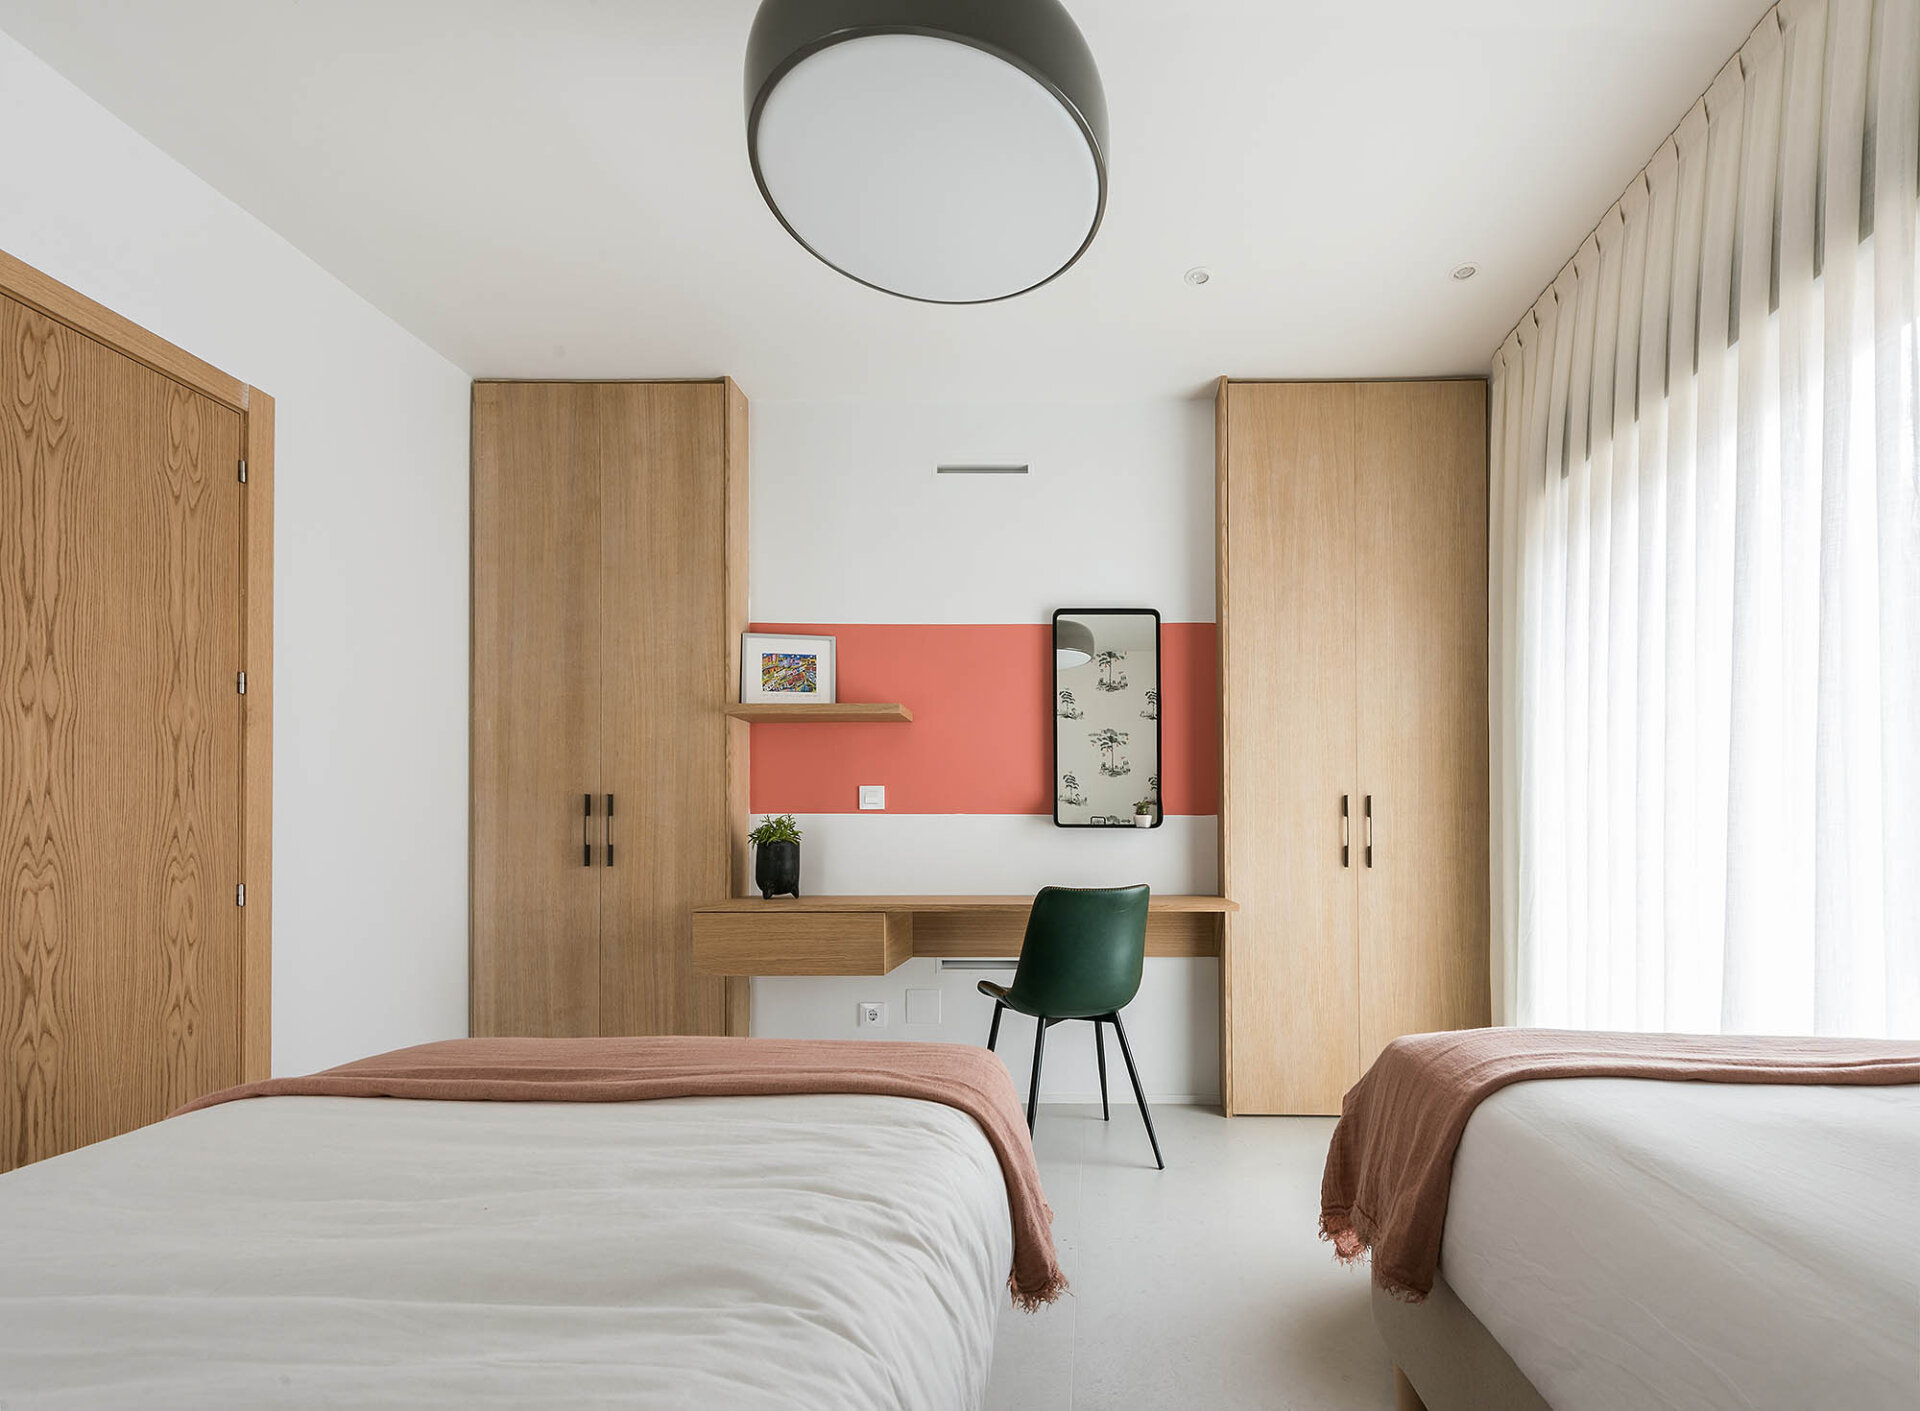 Dormitorios de diseño: Outline Interior